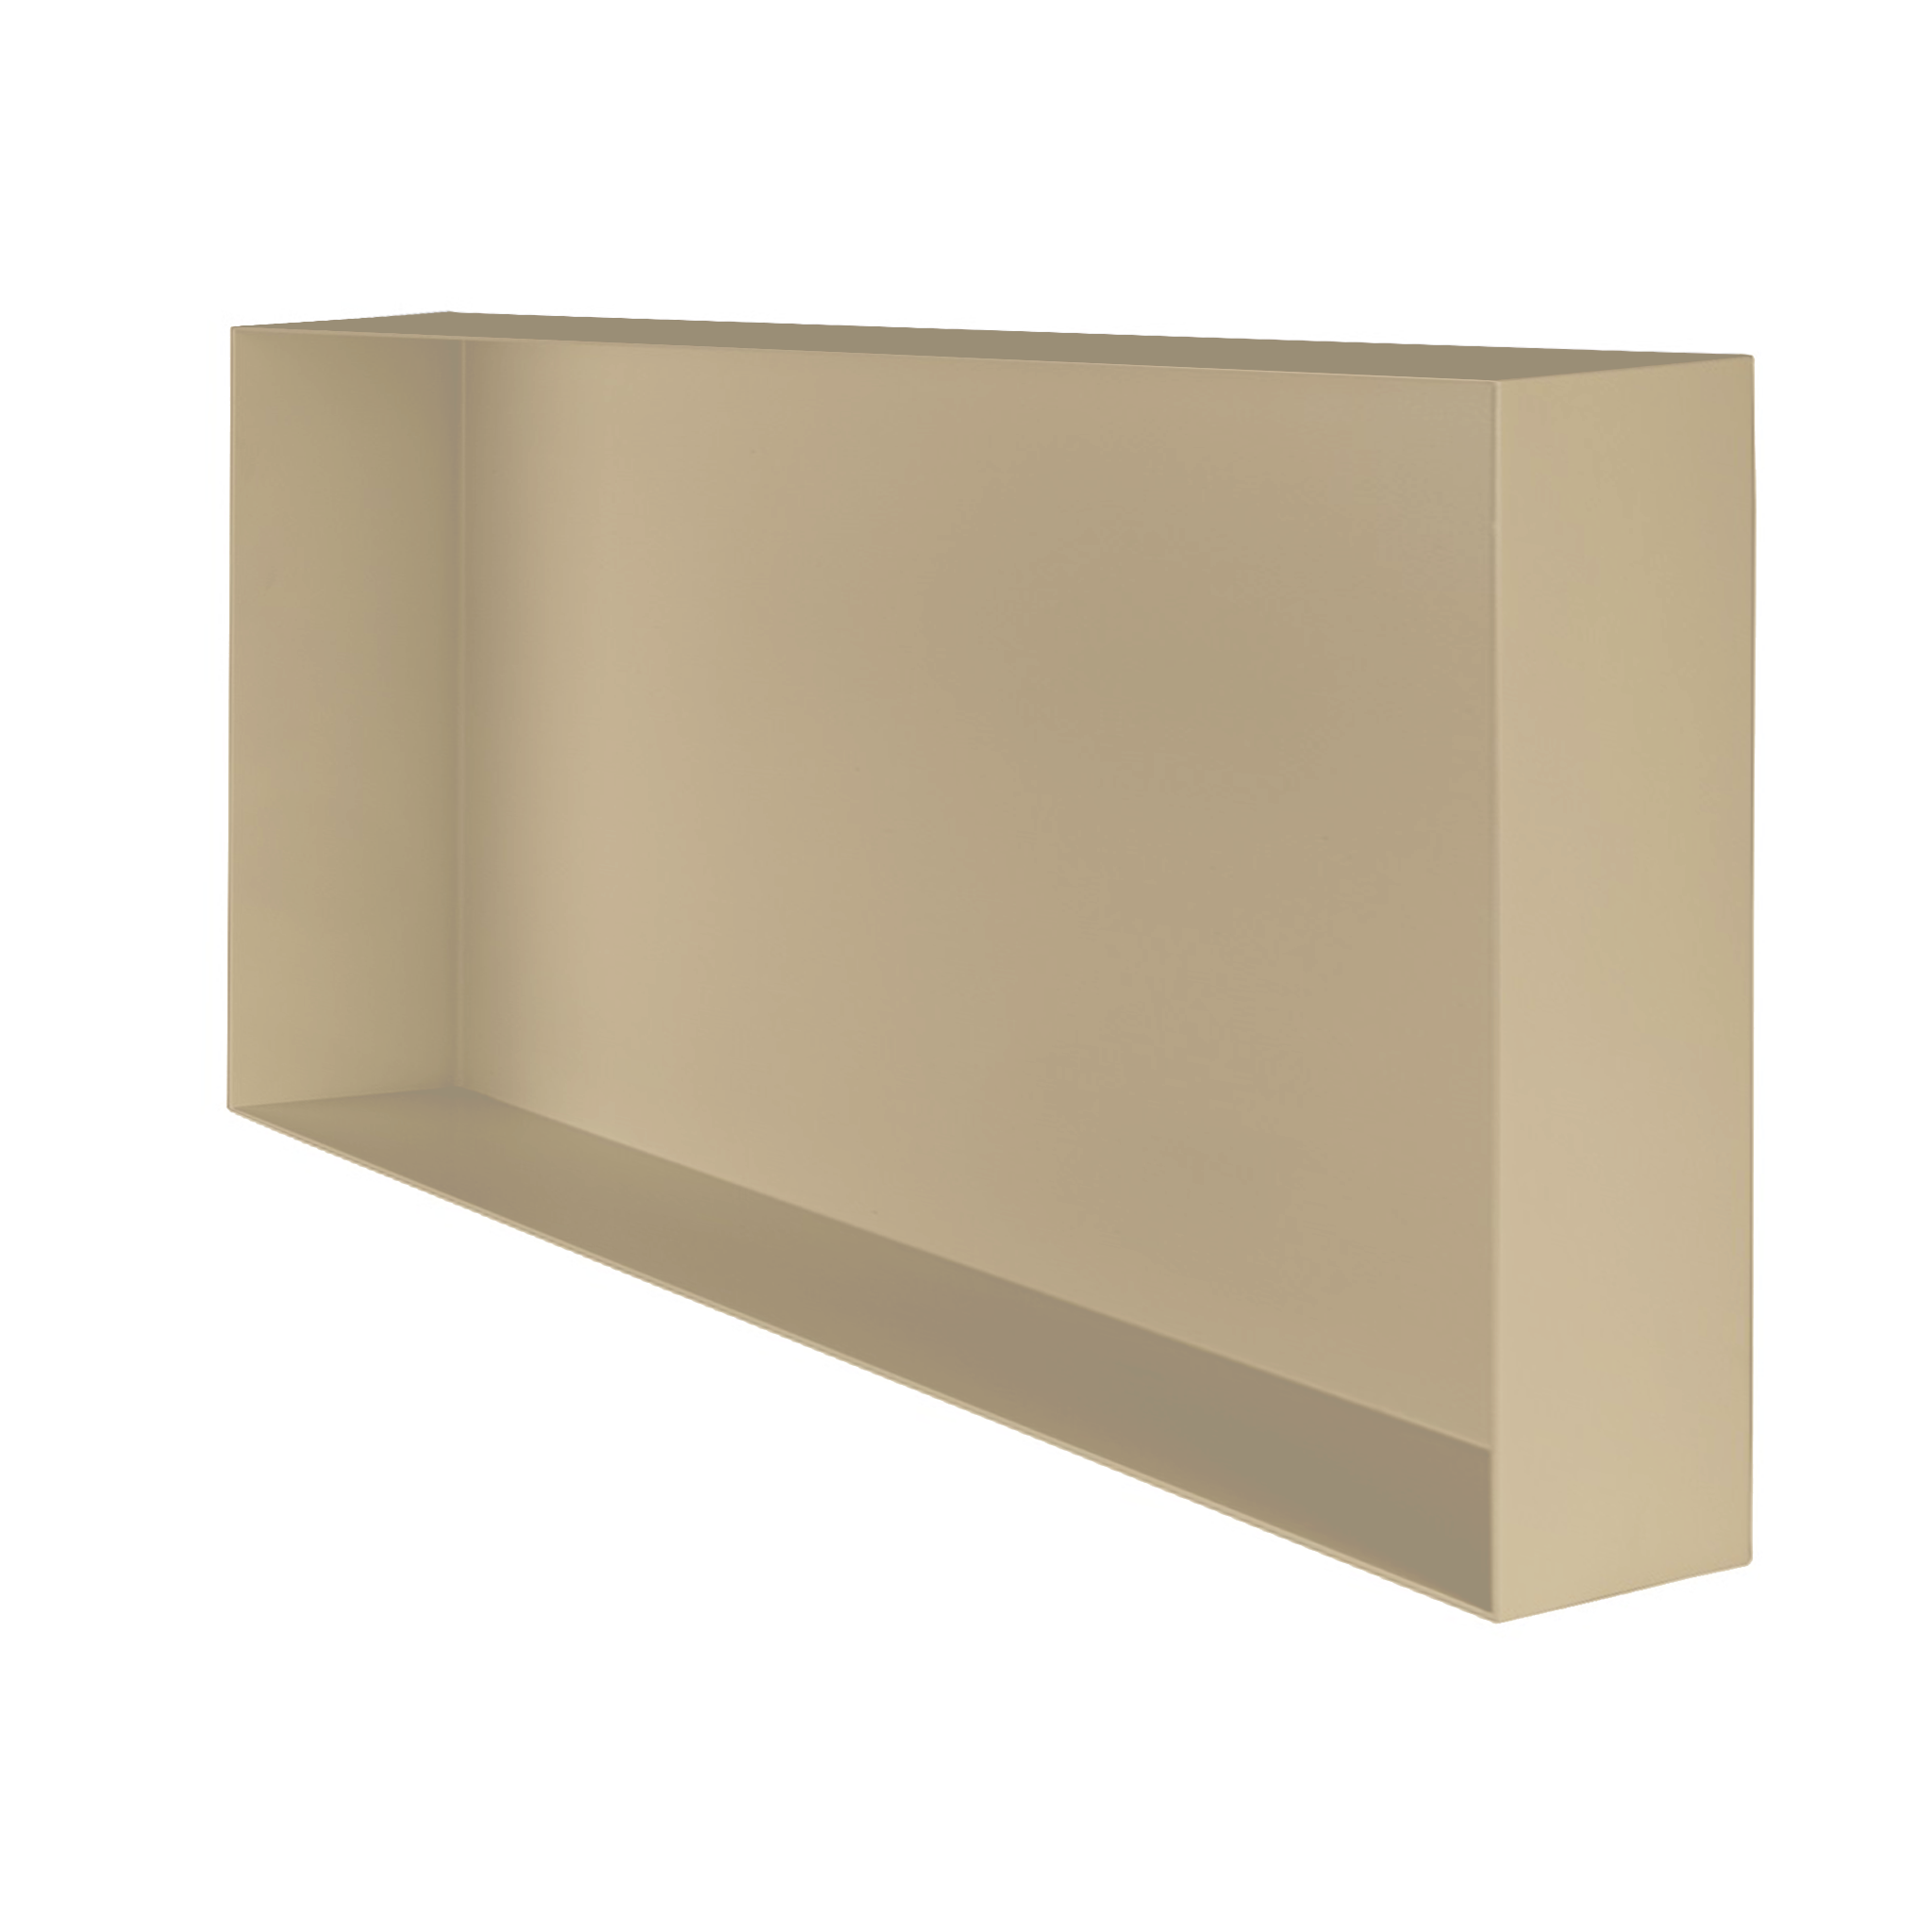 Valli Home – V-Box, Nicchia portaoggetti in Metallo smaltato color Beige KK90, Misura 30X60 P. 10 cm – V-BOX.MLLO.30X60.90